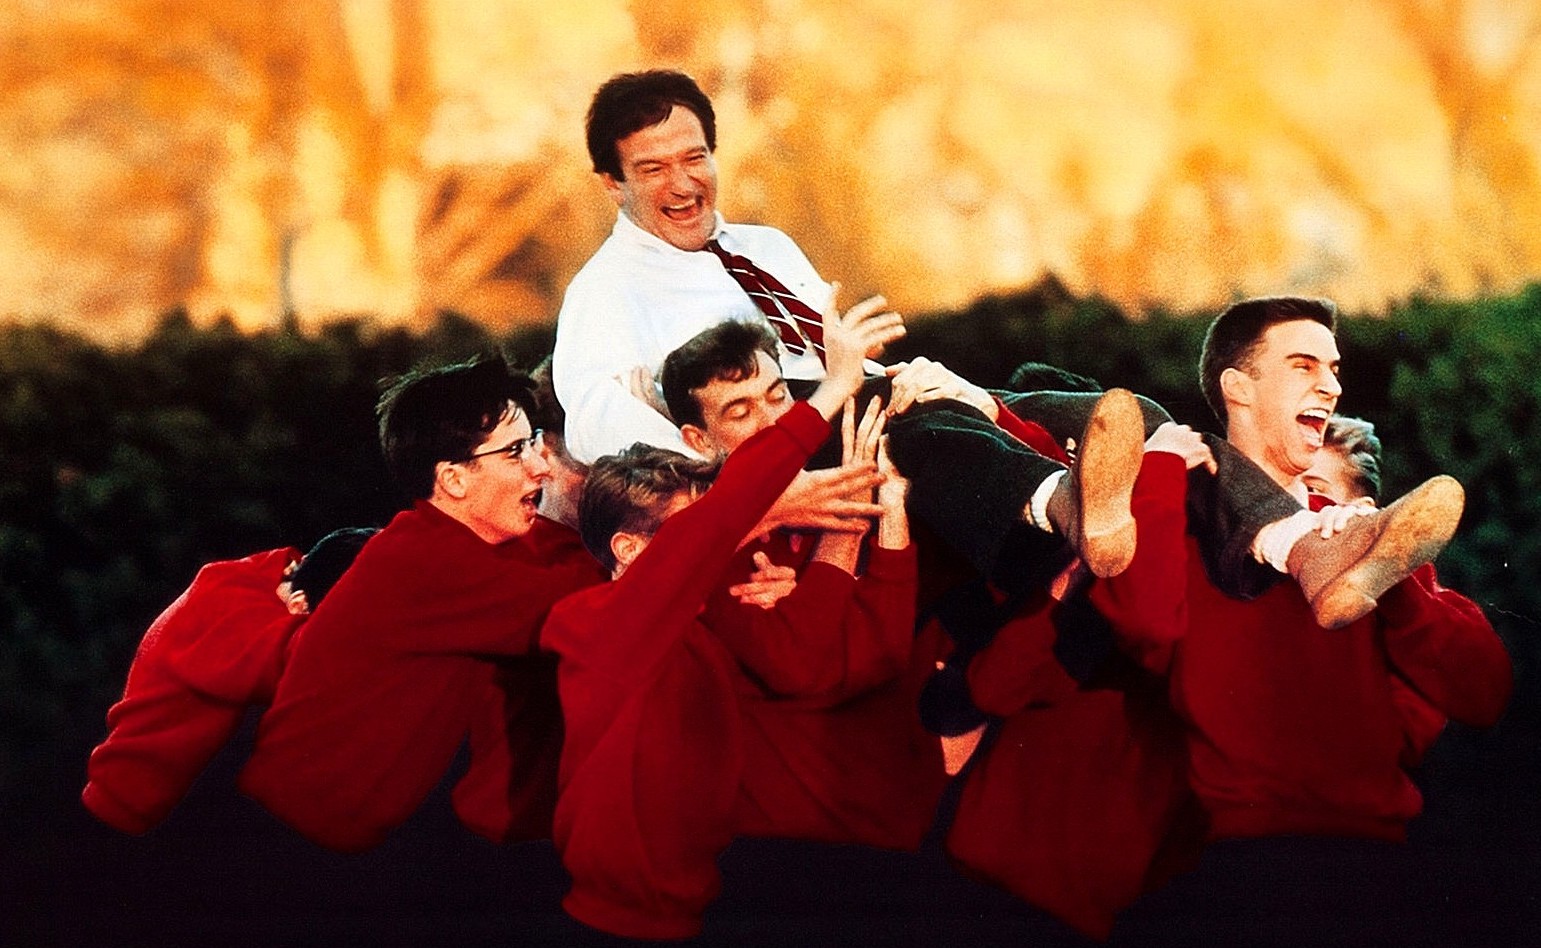 L’attimo fuggente, le improvvisazioni di Robin Williams e l’ispirazione presa da un vero professore